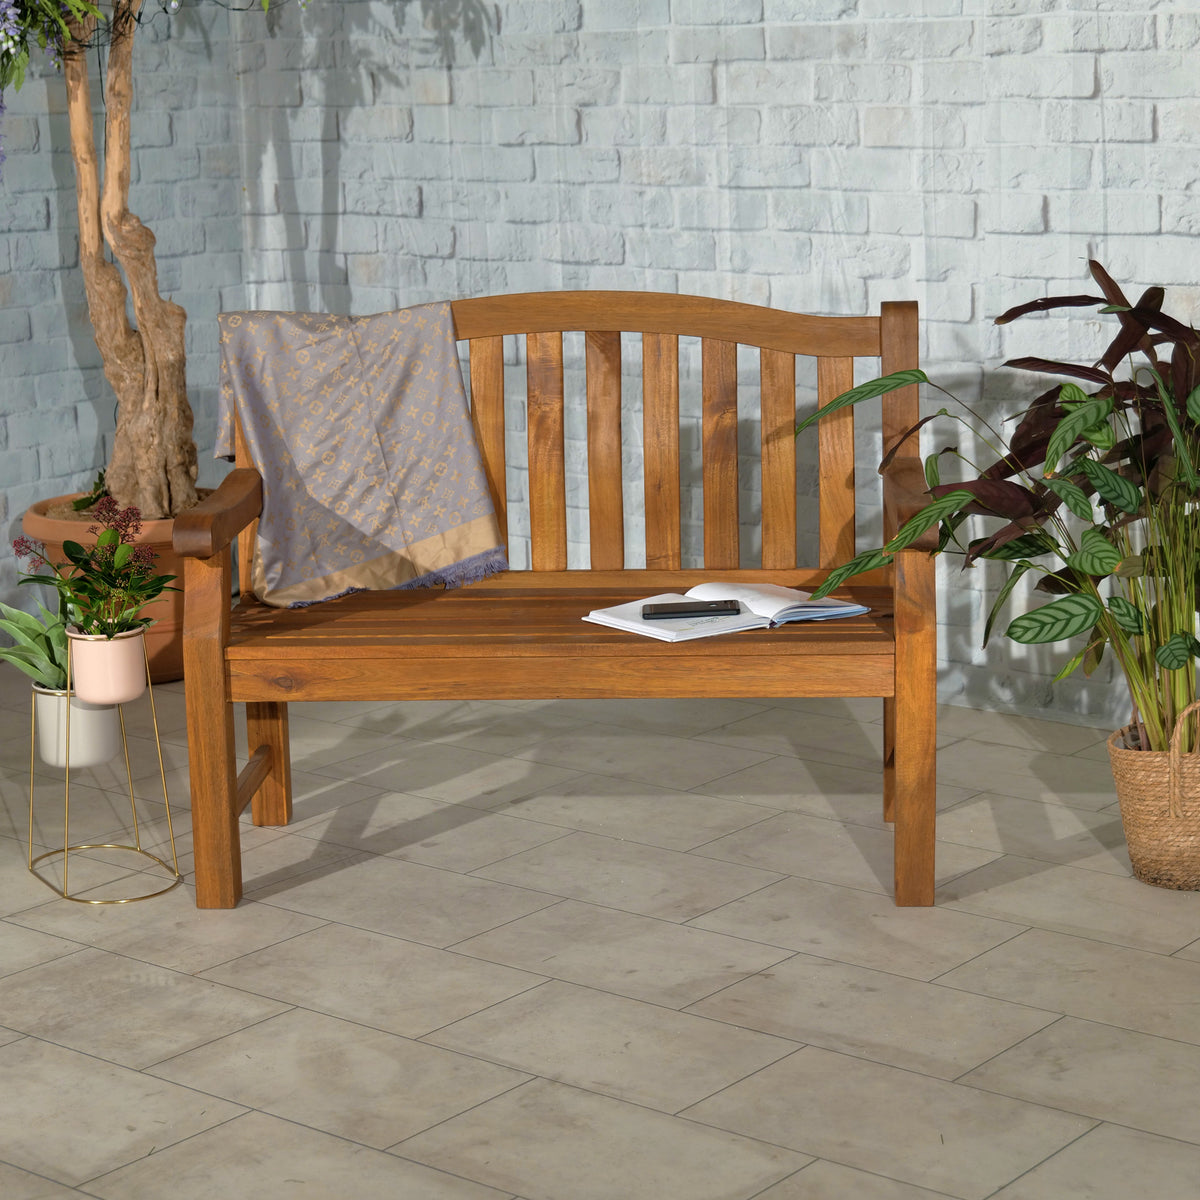 Lytham FSC Acacia 2 Seater Bench for Garden or Patio